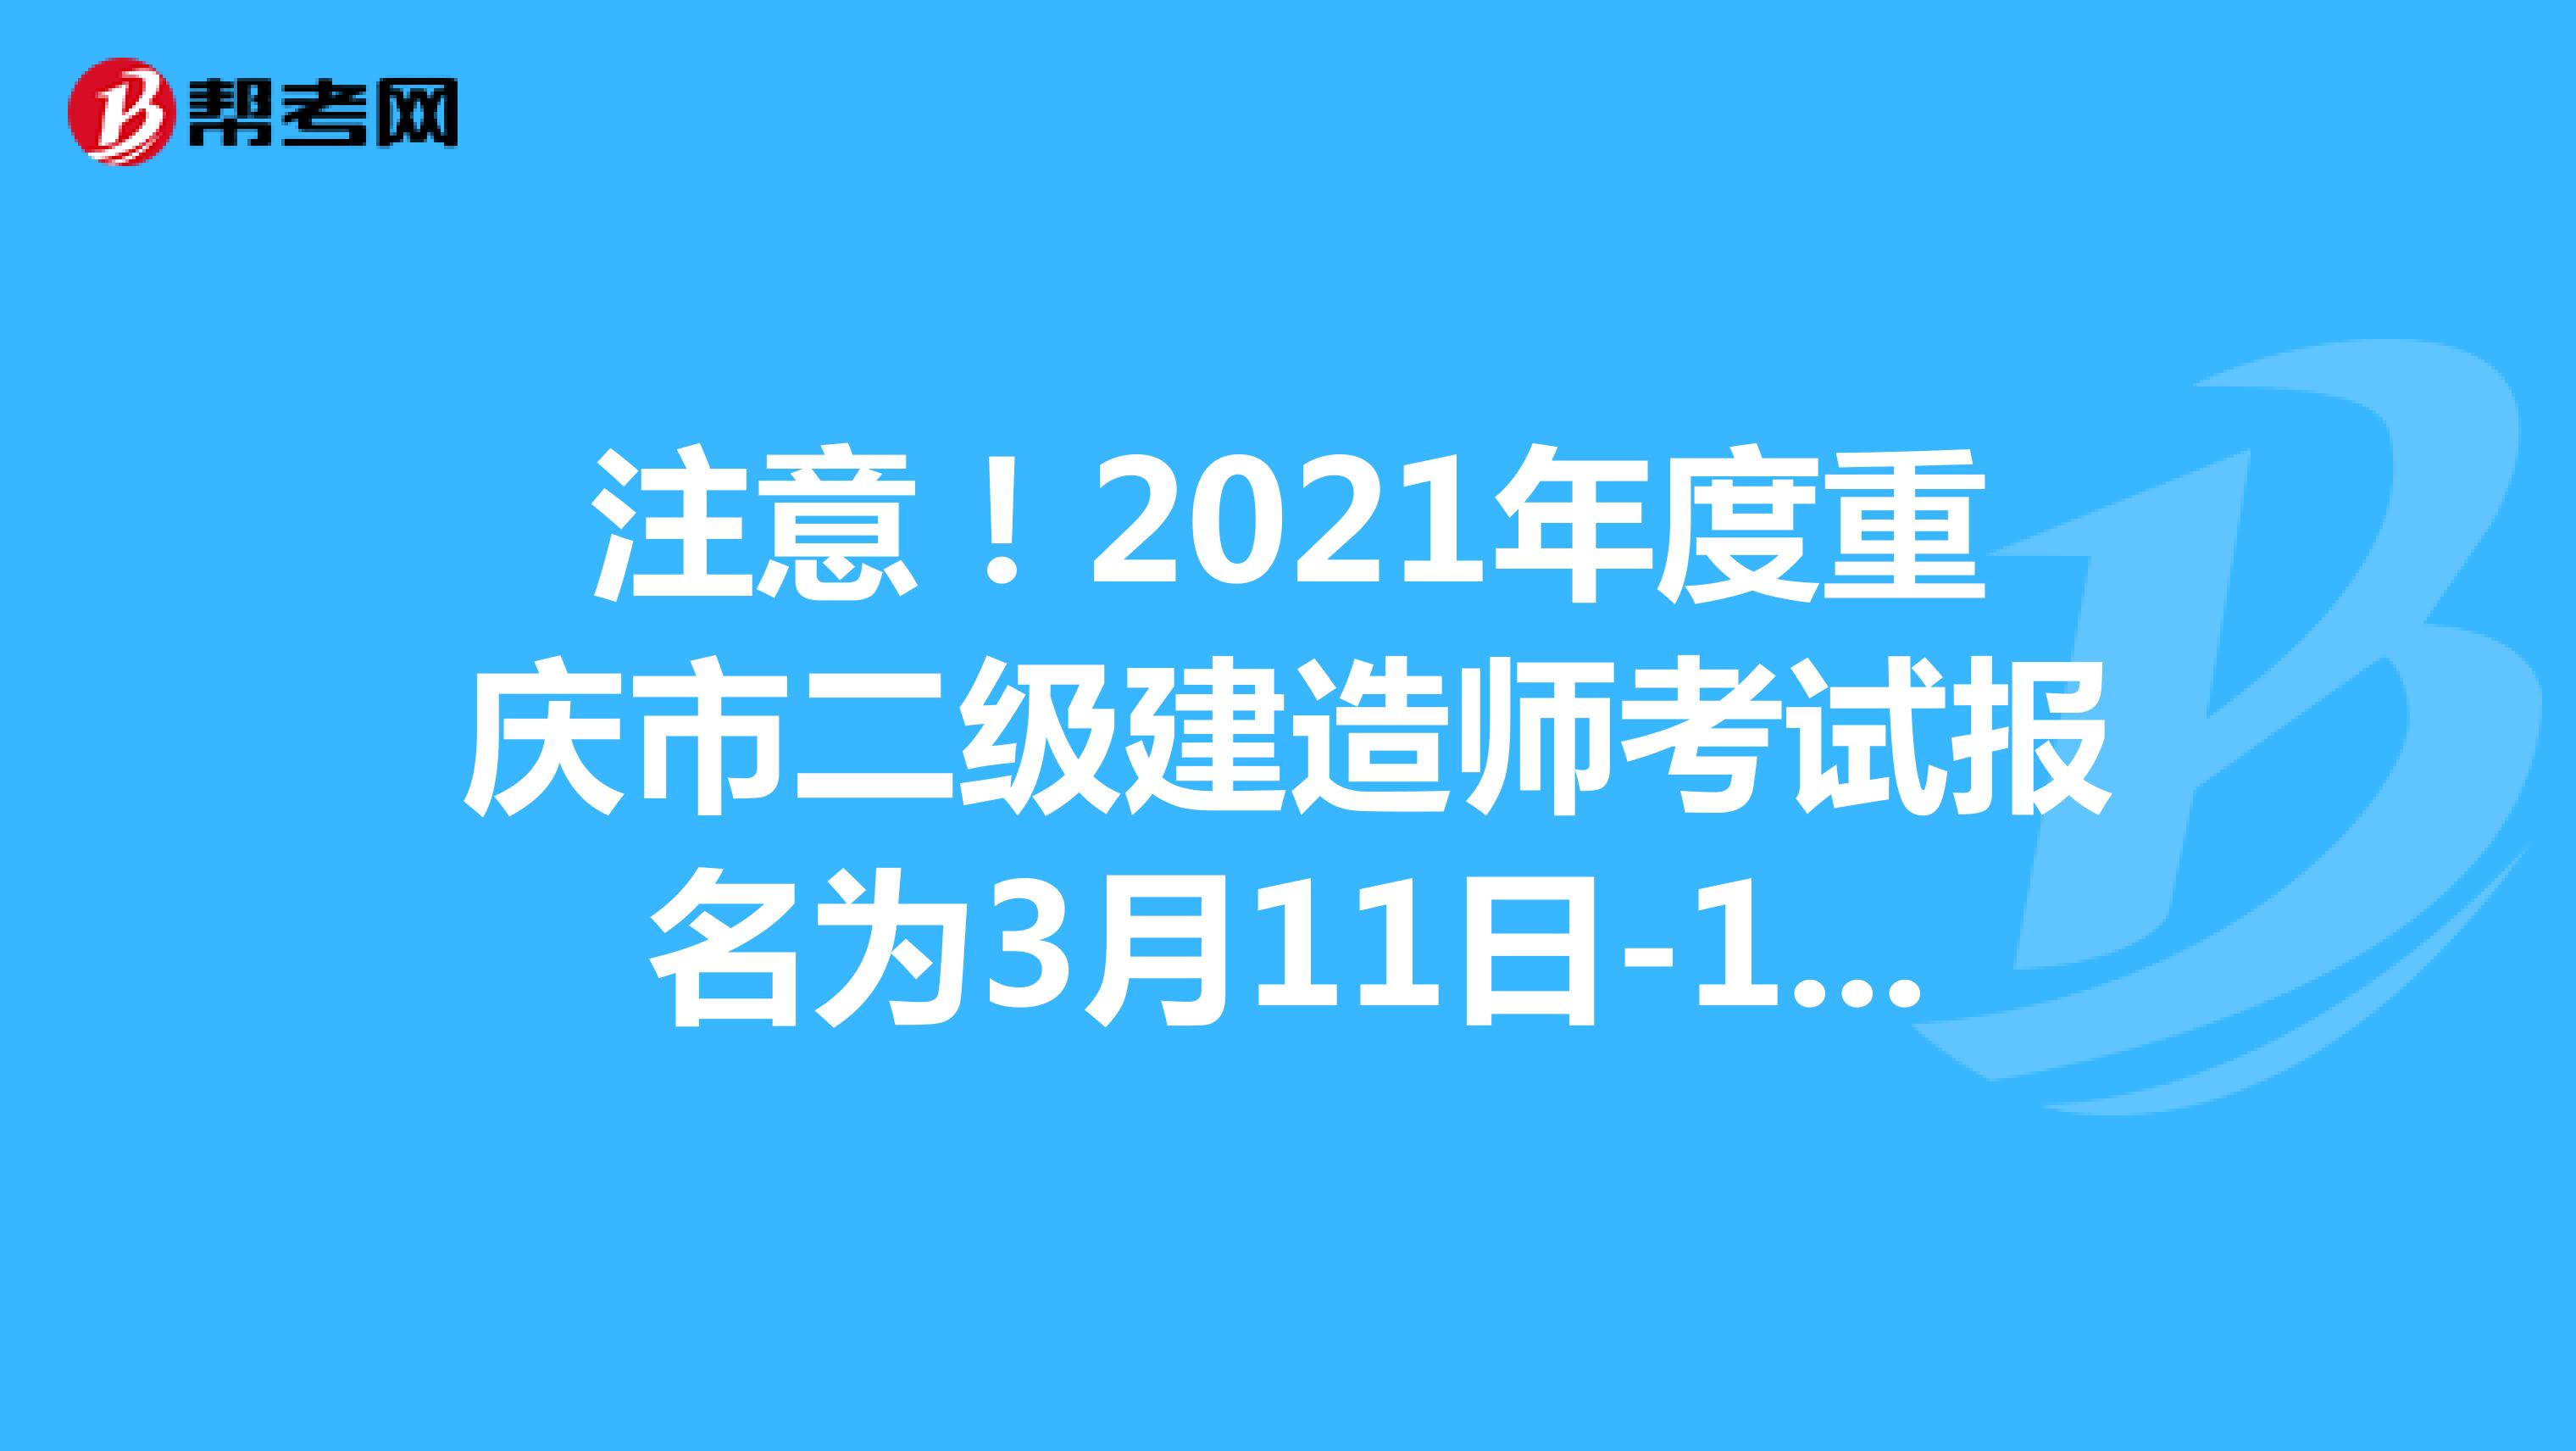 注意！2021年度重庆市二级建造师考试报名为3月11日-17日